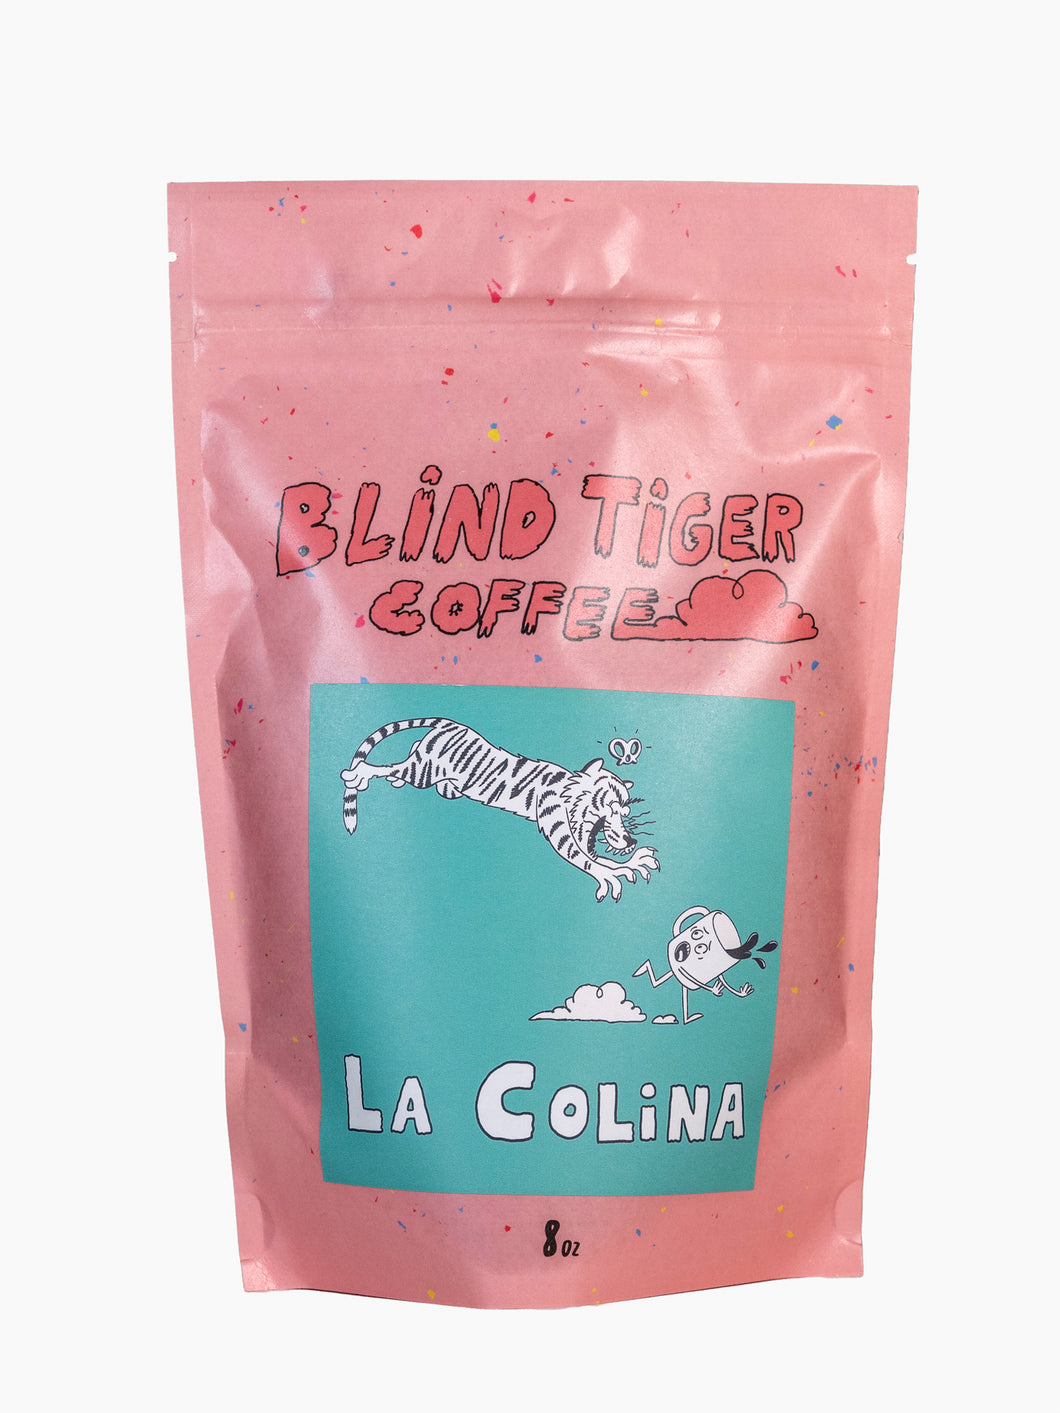 La Colina Blind Tiger Coffee